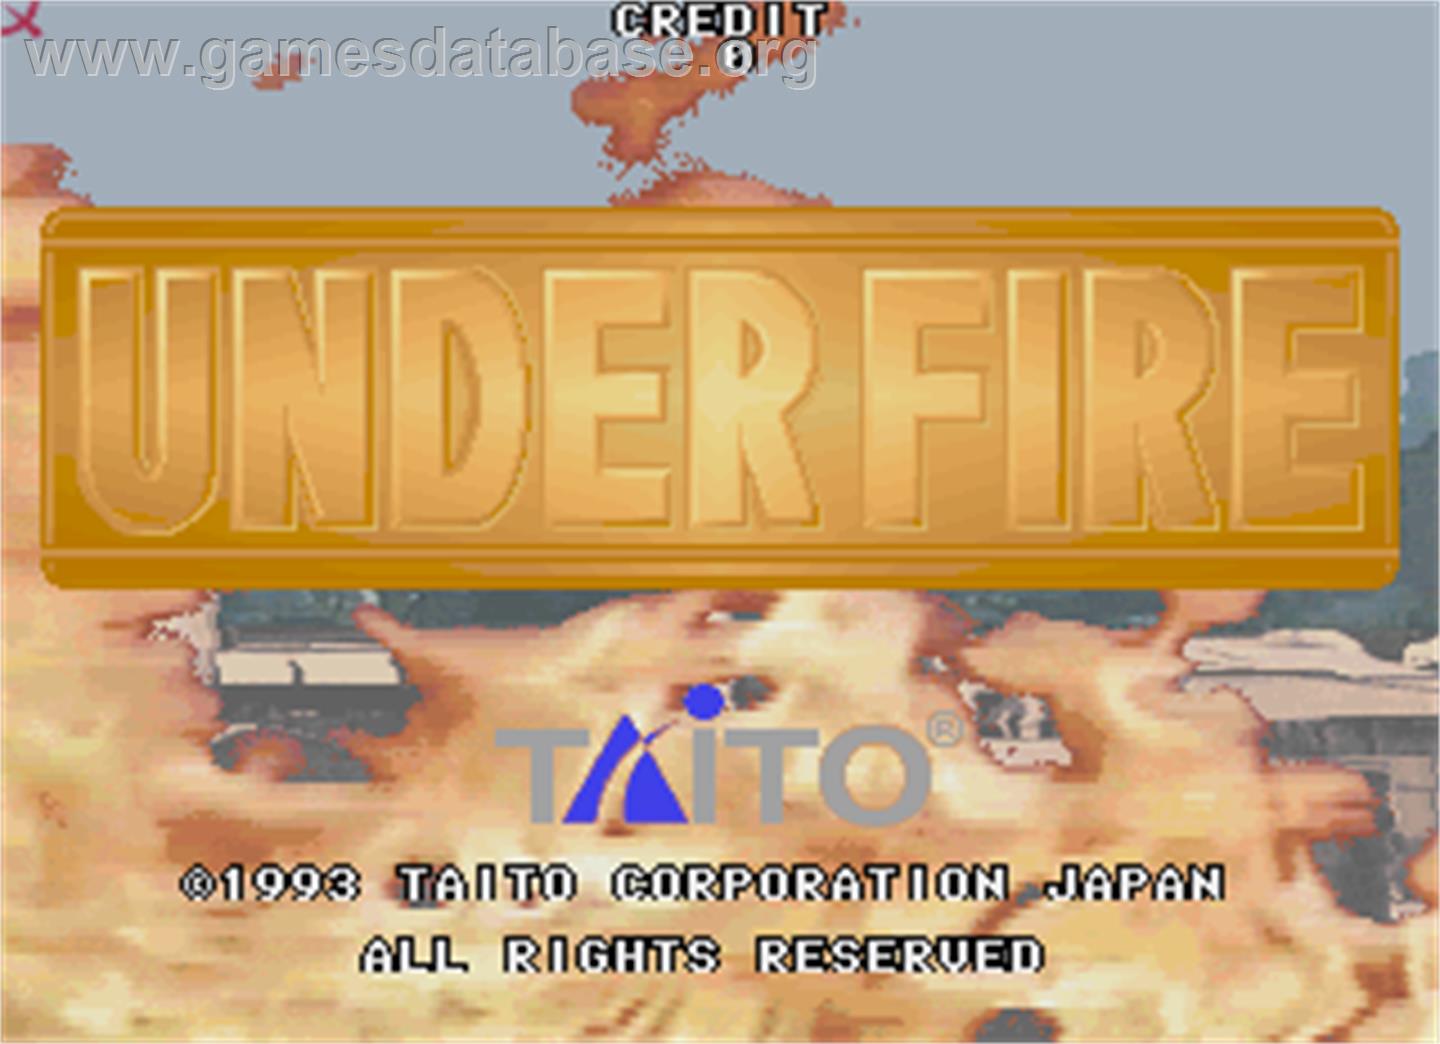 Under Fire - Arcade - Artwork - Title Screen